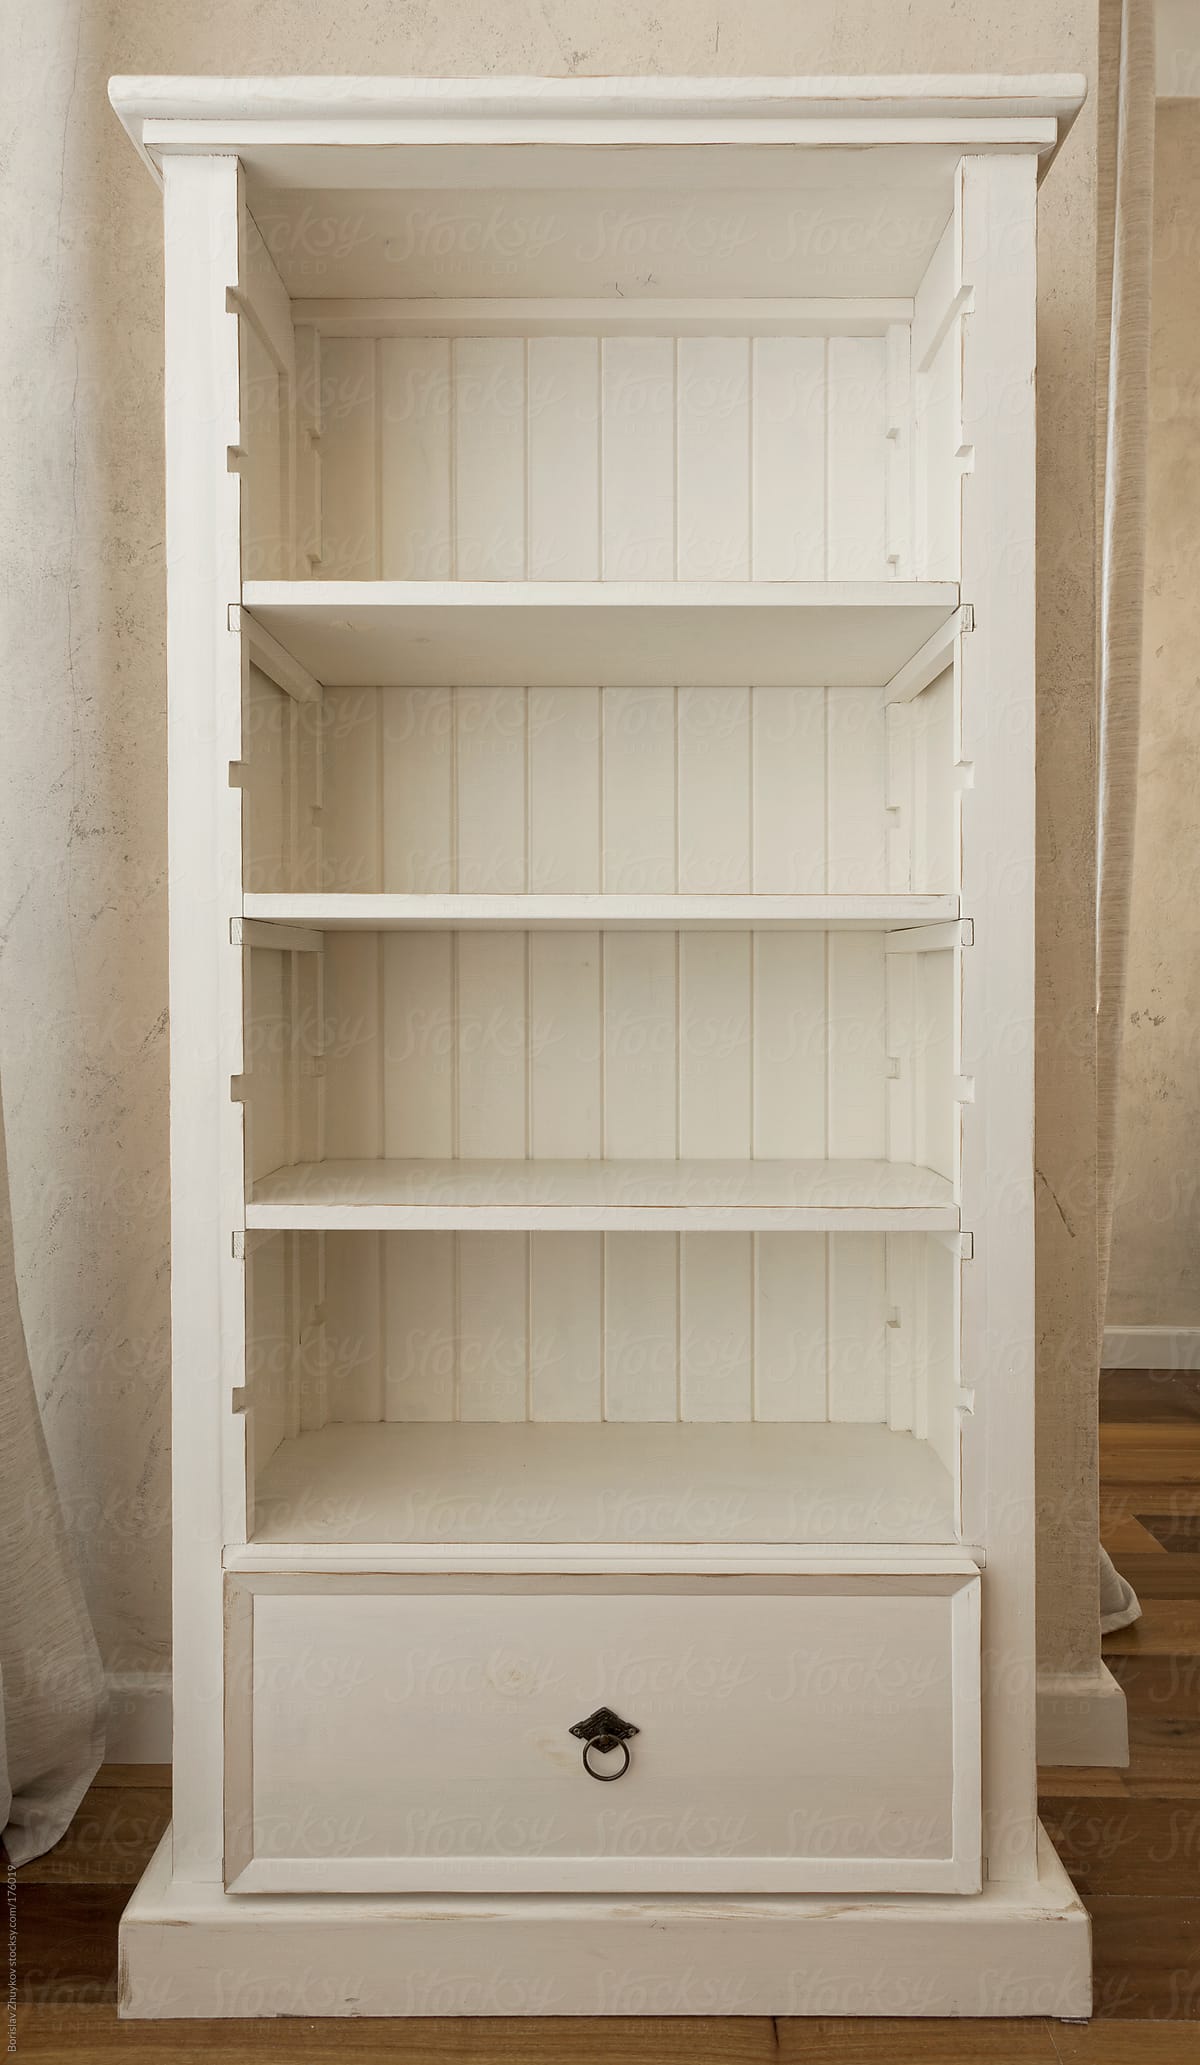 Еmpty shelves